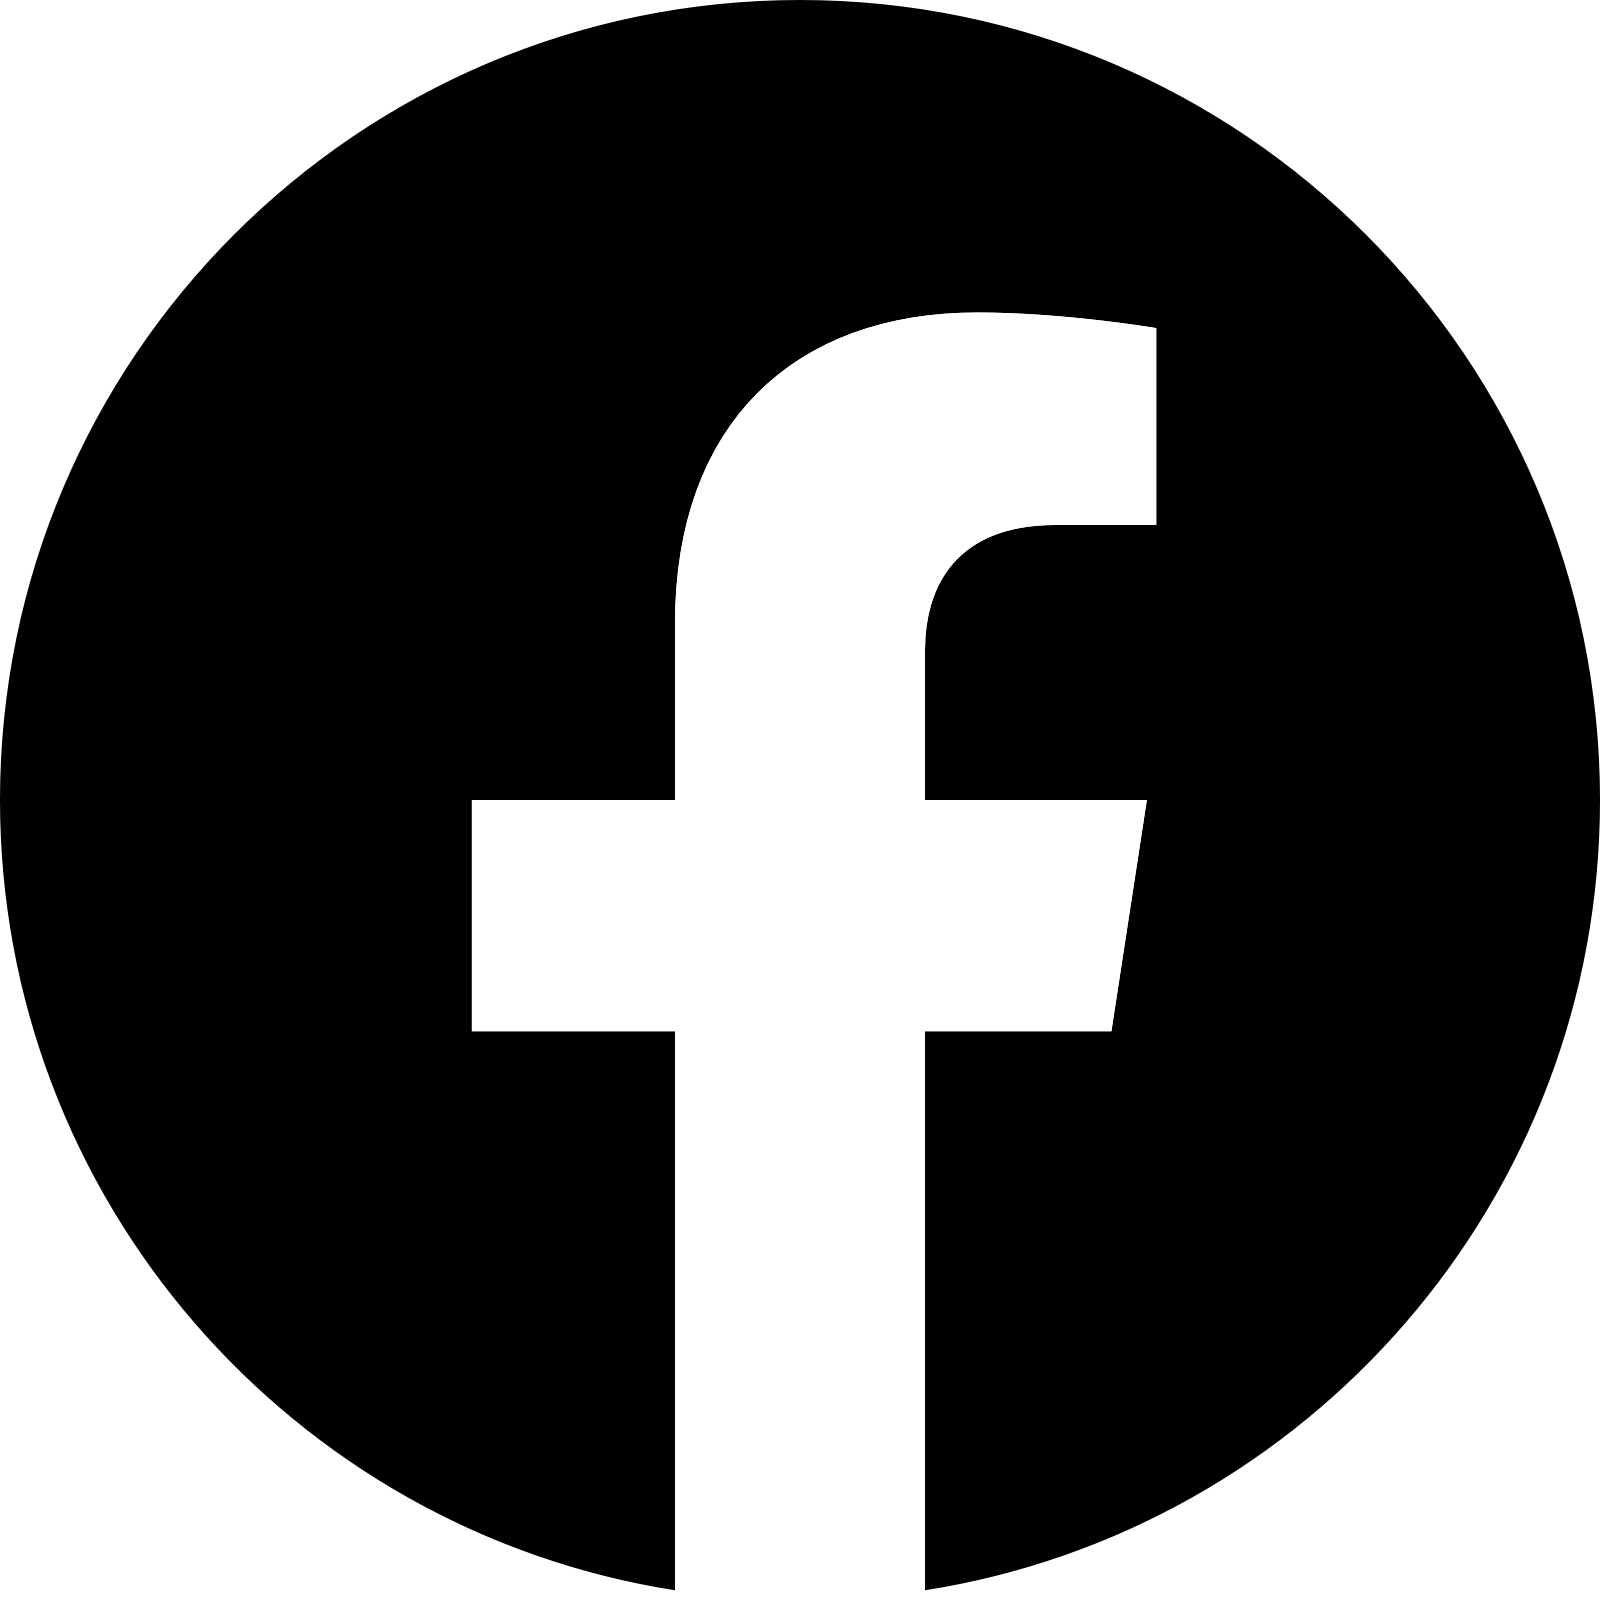 facebook-logo-black-2019.png